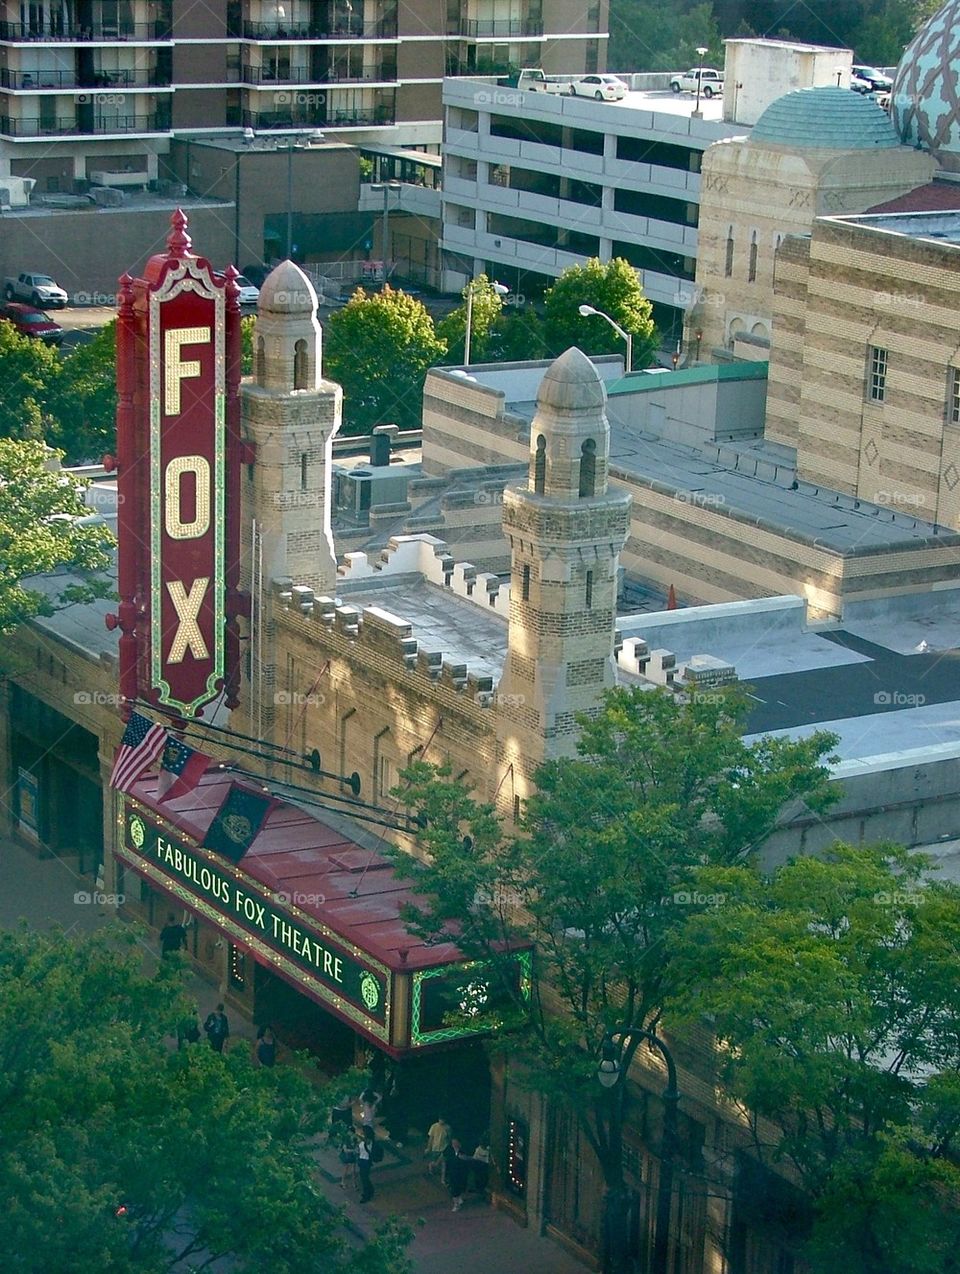 Fox theater